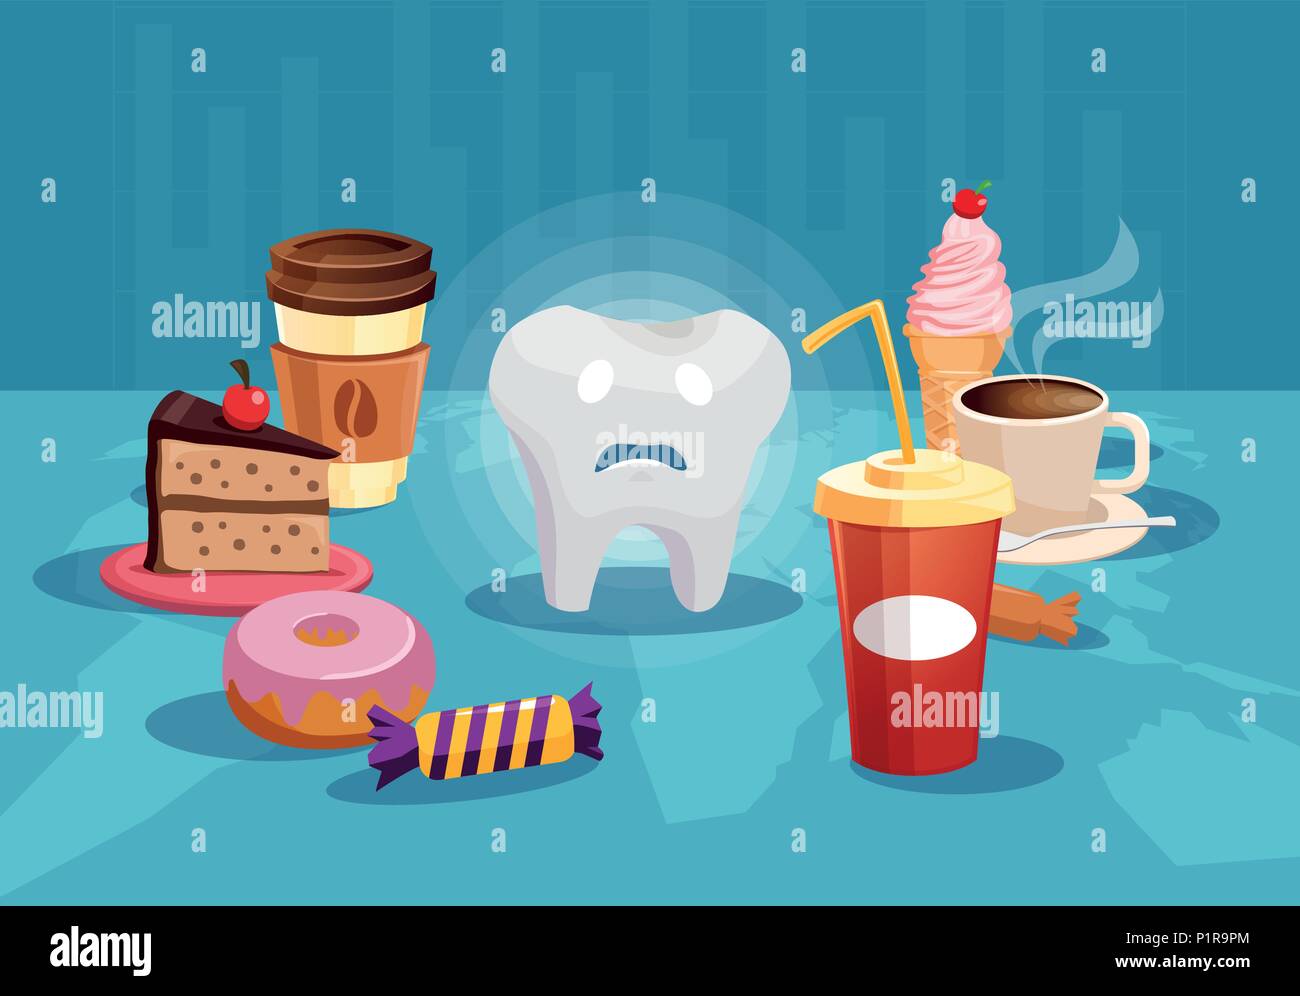 Konzept Abbildung mit traurigen Zahn unter den süssen und schlechtes Essen in Gefahr der Kavität. Stock Vektor